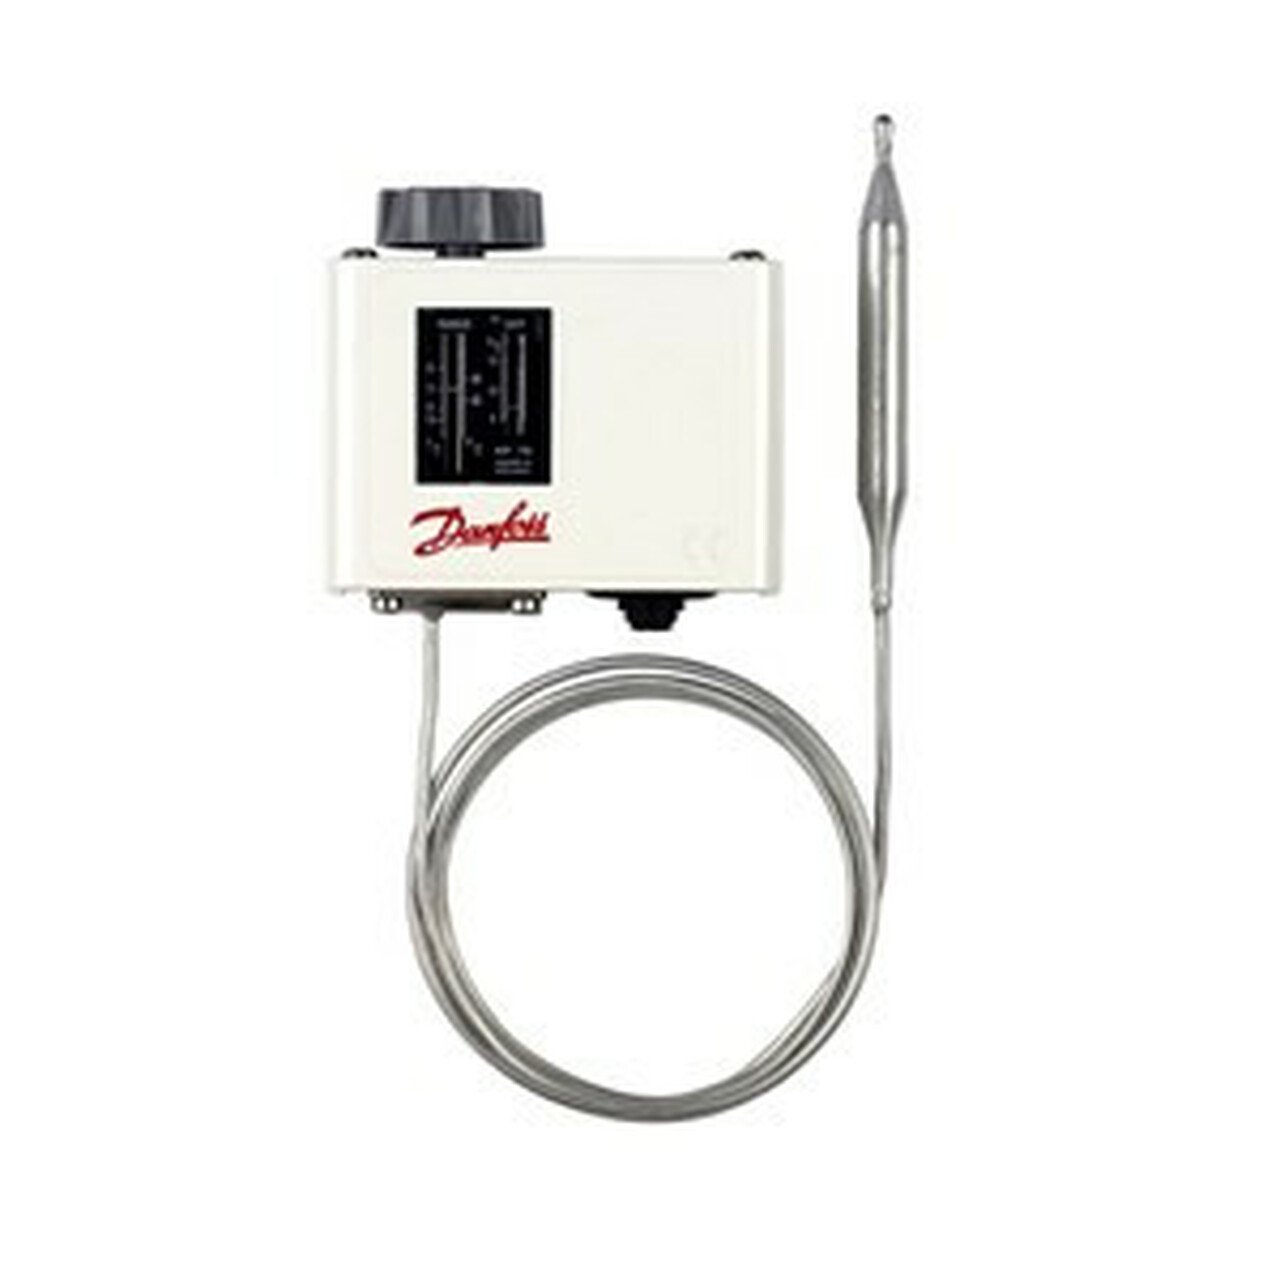 Thermostat différentiel DANFOSS KP71,060L1115, calibrage sur site -5... +20°C, tube capillaire 2000 mm, capteur ø 9,5x115 mm